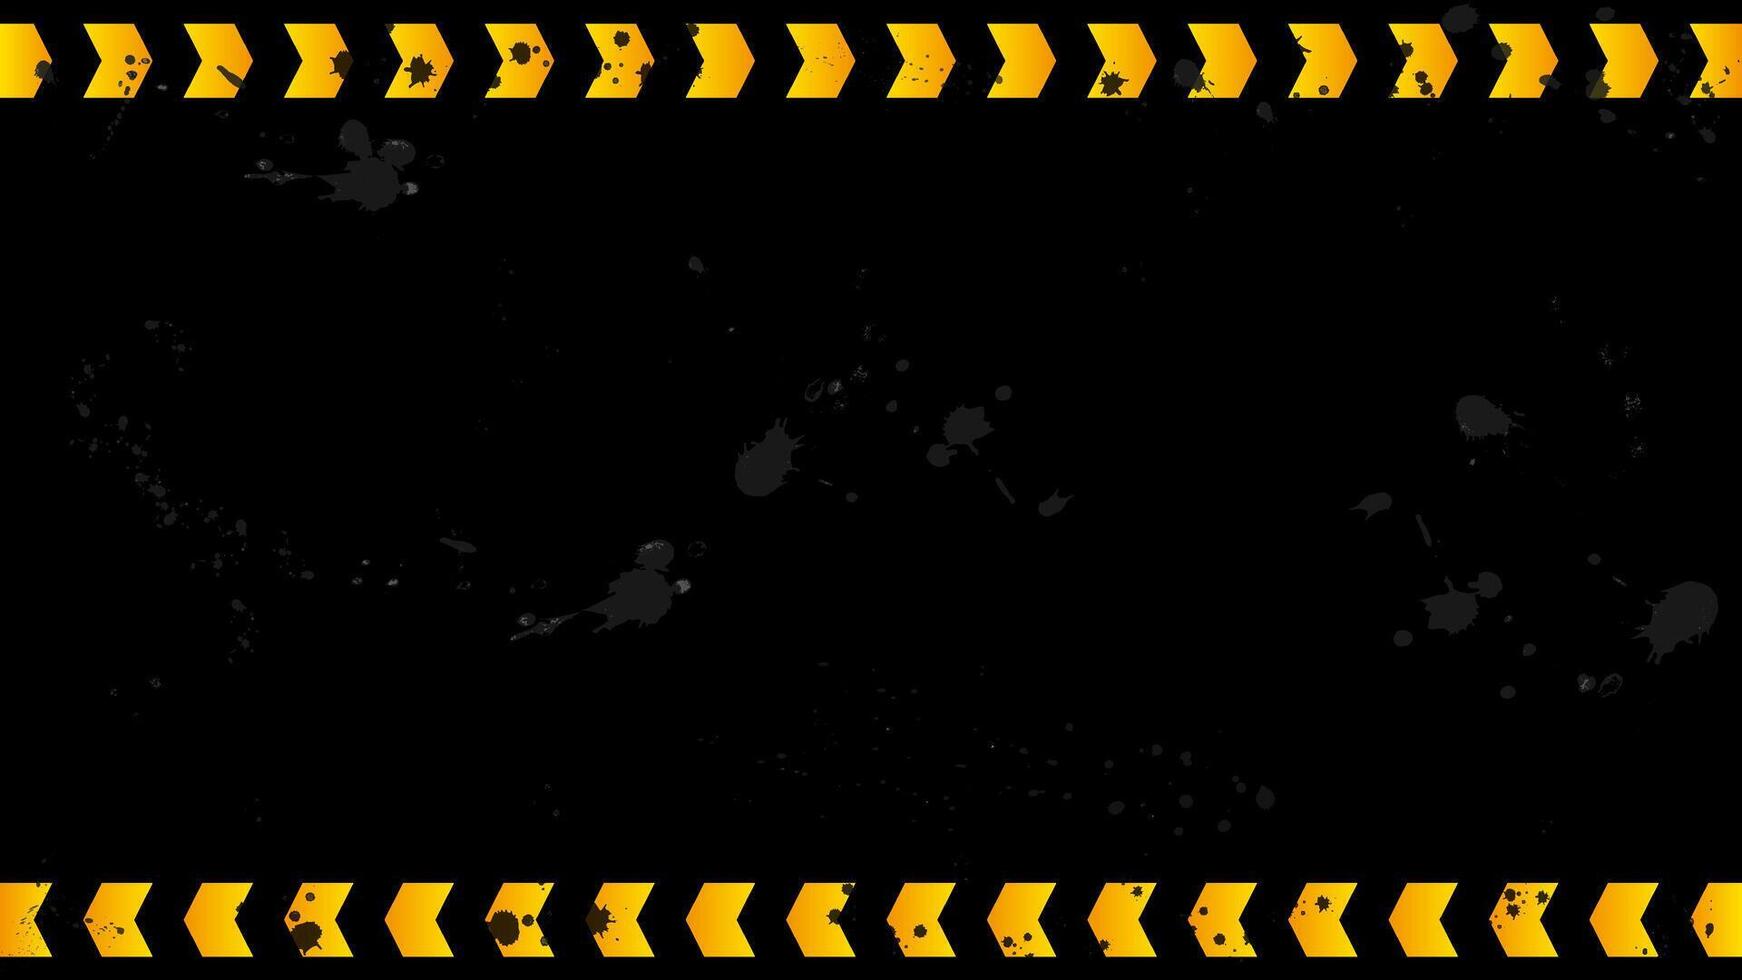 schwarz Grunge städtisch Hintergrund mit Orange Pfeile imitieren ein Warnung Schleife. vektor